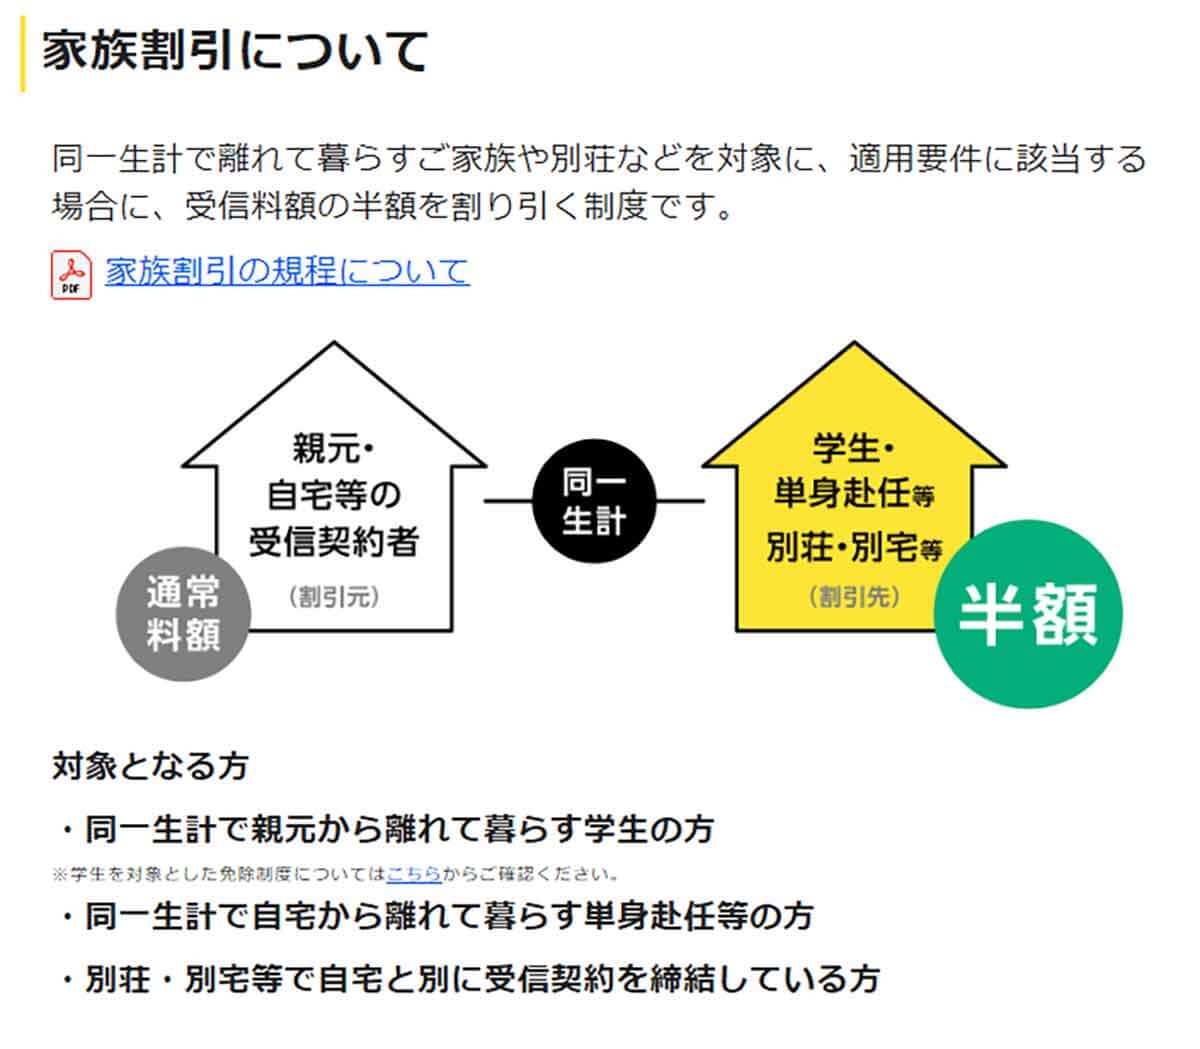 NHKの受信料をさらに安くする4つの制度1